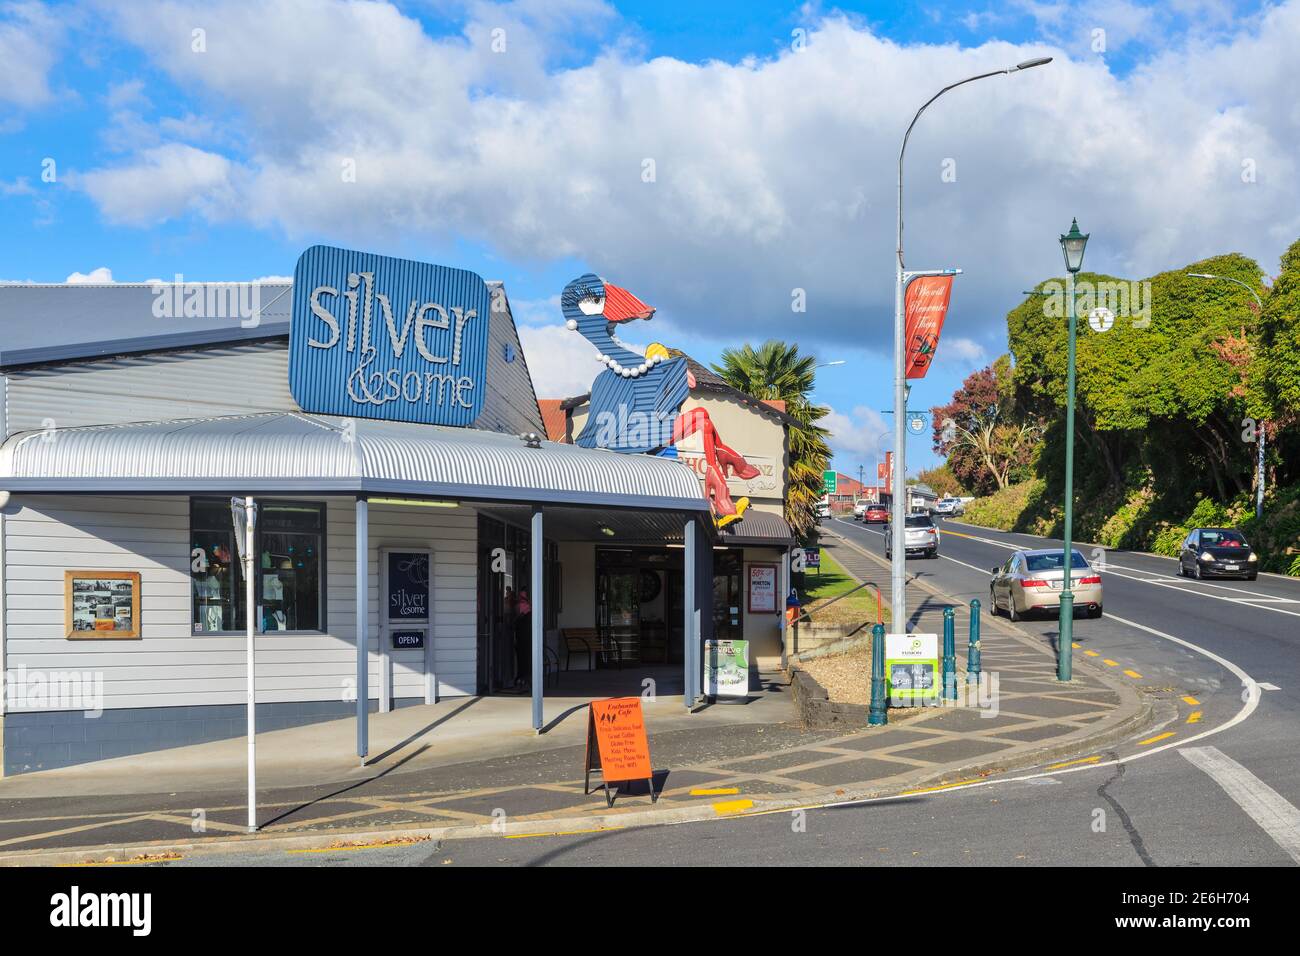 Tirau, Nuova Zelanda, conosciuta per le sue numerose opere d'arte in ferro ondulato. Una scultura di un pukeko (uccello nativo) in cima al negozio di gioielli 'Silver & Some' Foto Stock